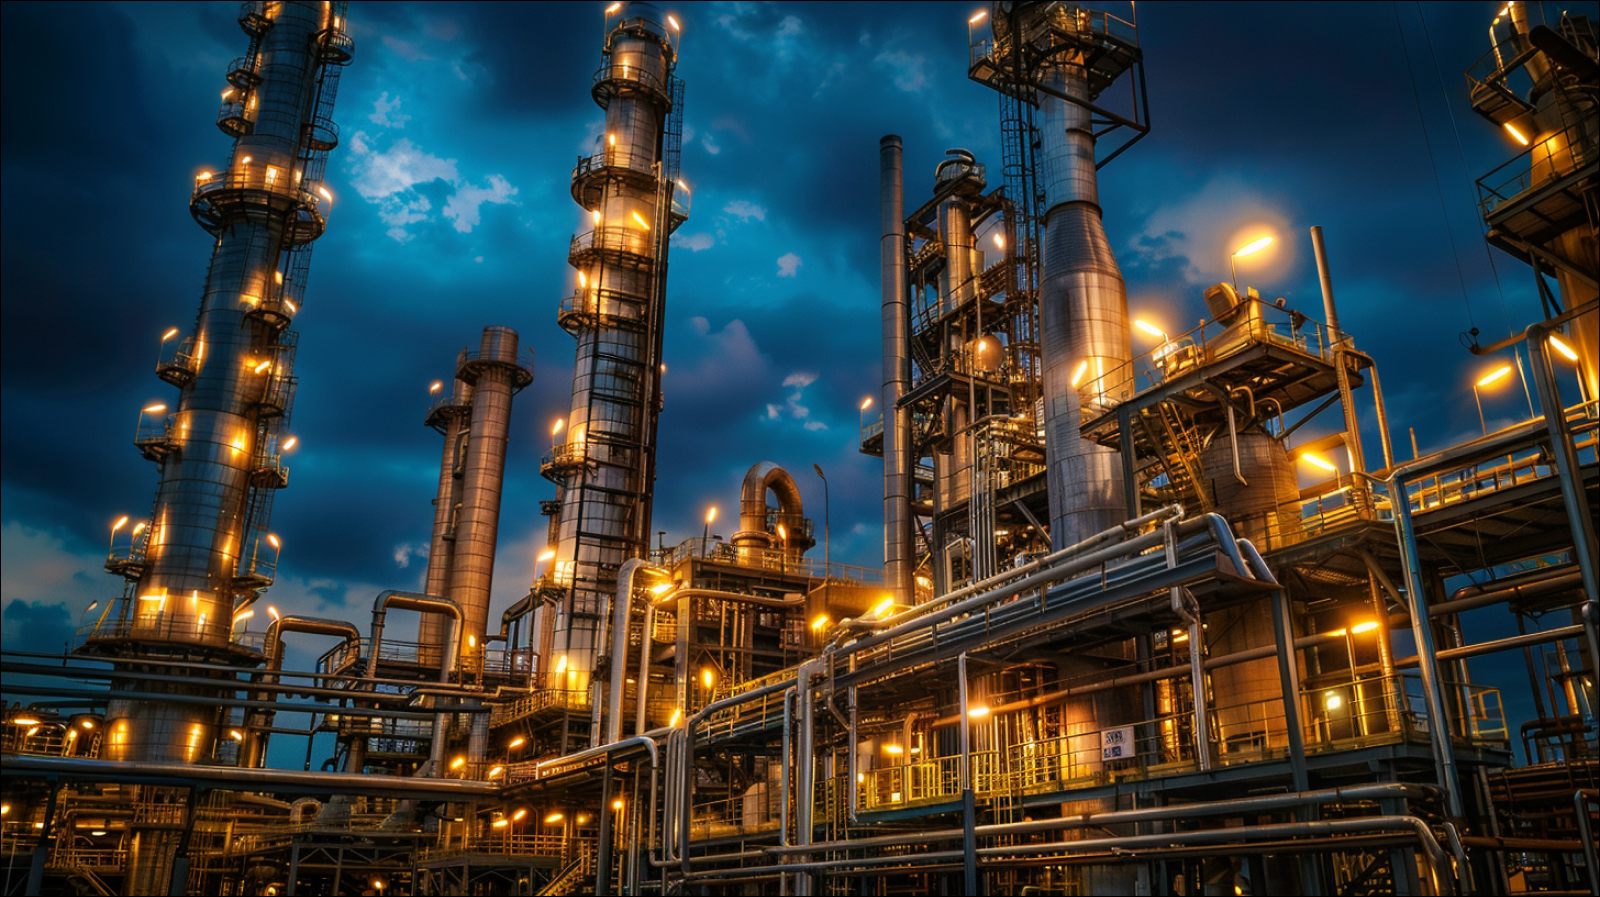 Das Bild zeigt eine komplex beleuchtete Industrieraffinerie mit hohen Säulen und einem verwinkelten Netz von Rohren unter einem Abendhimmel.